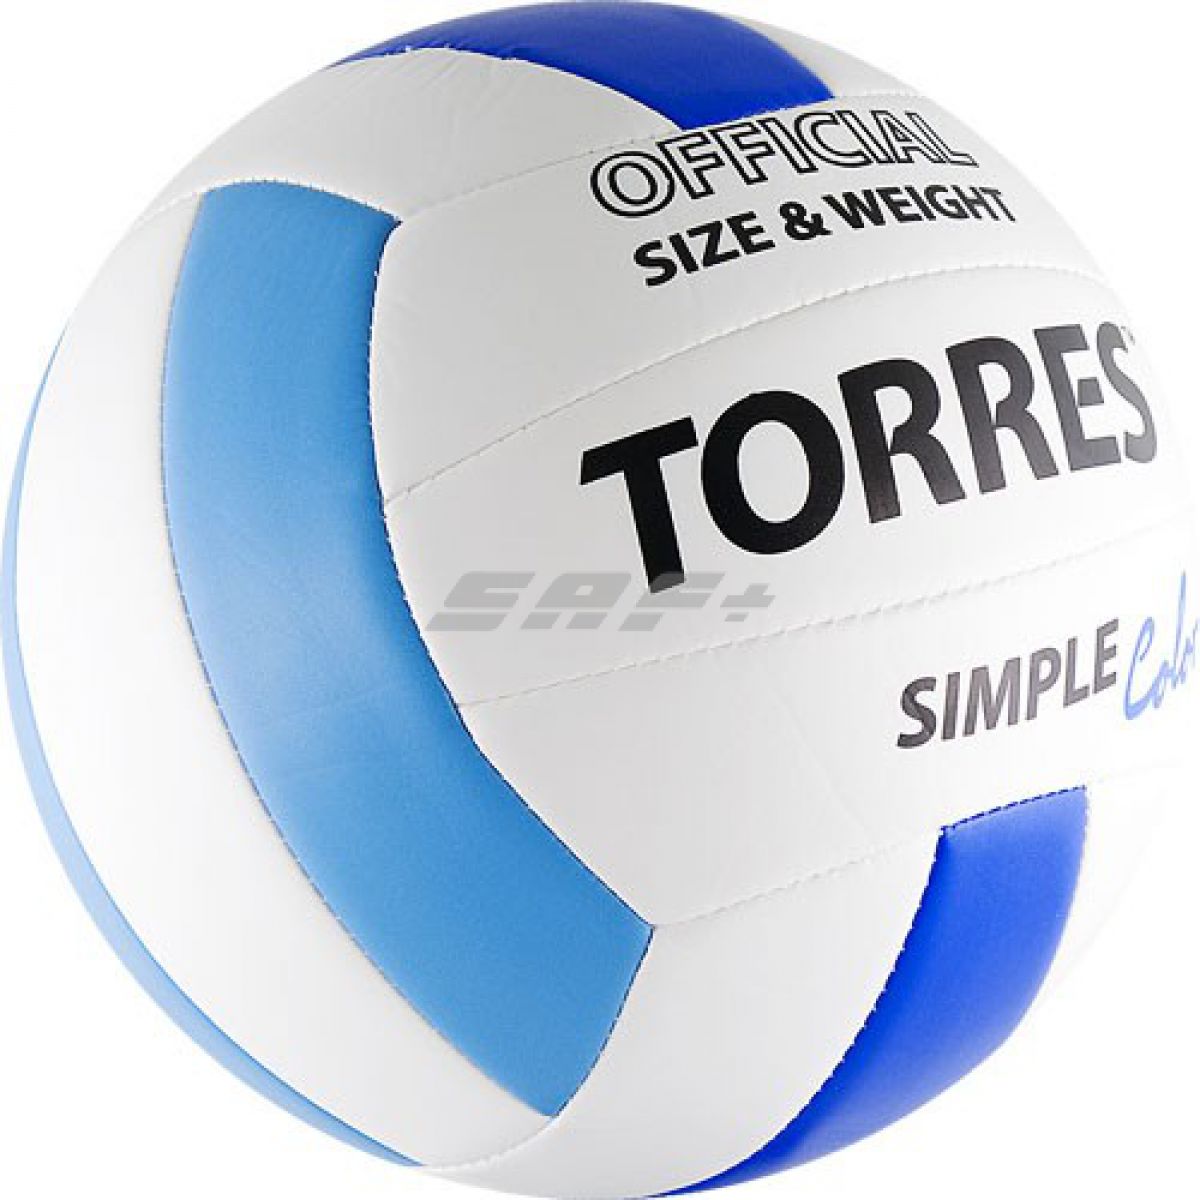 Мяч волейбольный TORRES Simple Color